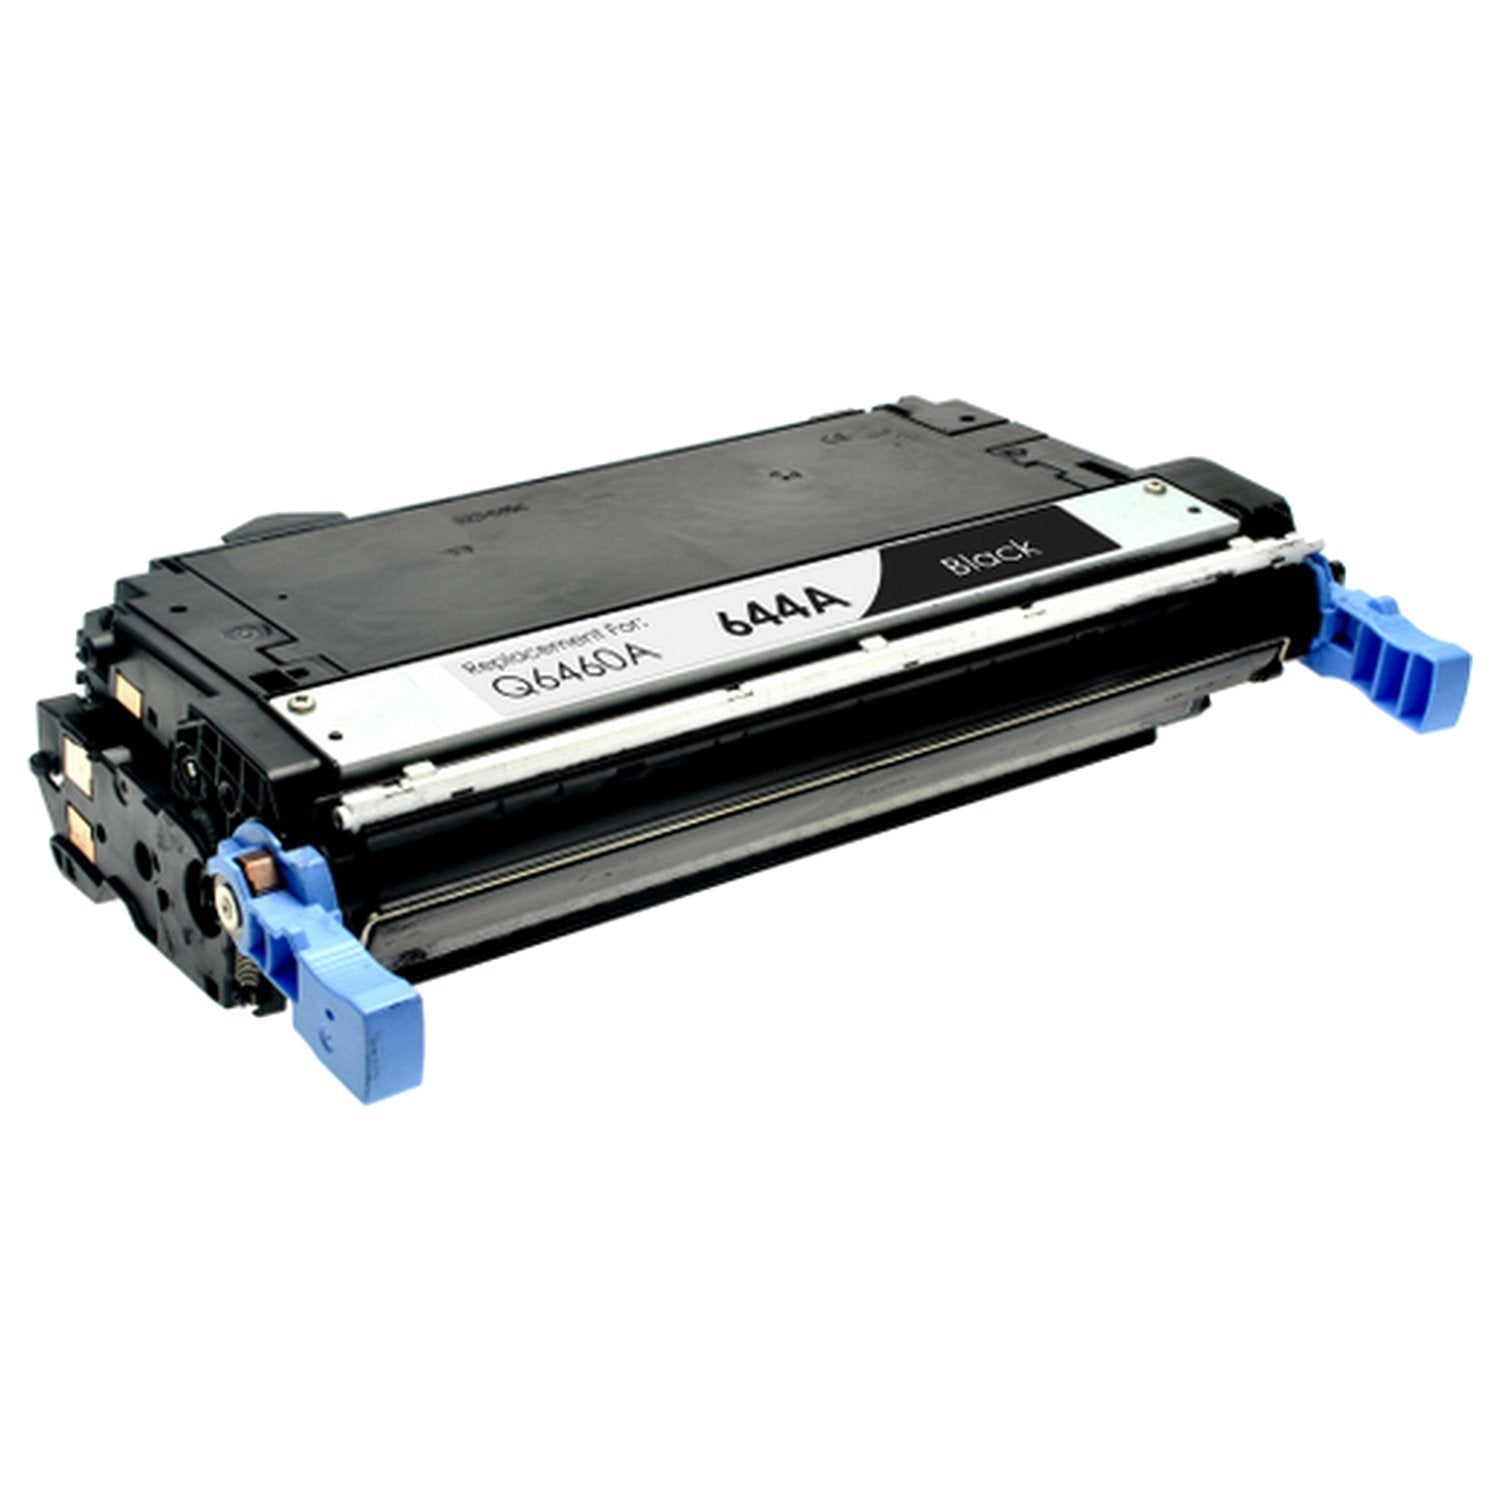 Absolute Toner Compatible HP 644A (Q6460A) Black Toner Cartridge | Absolute Toner HP Toner Cartridges